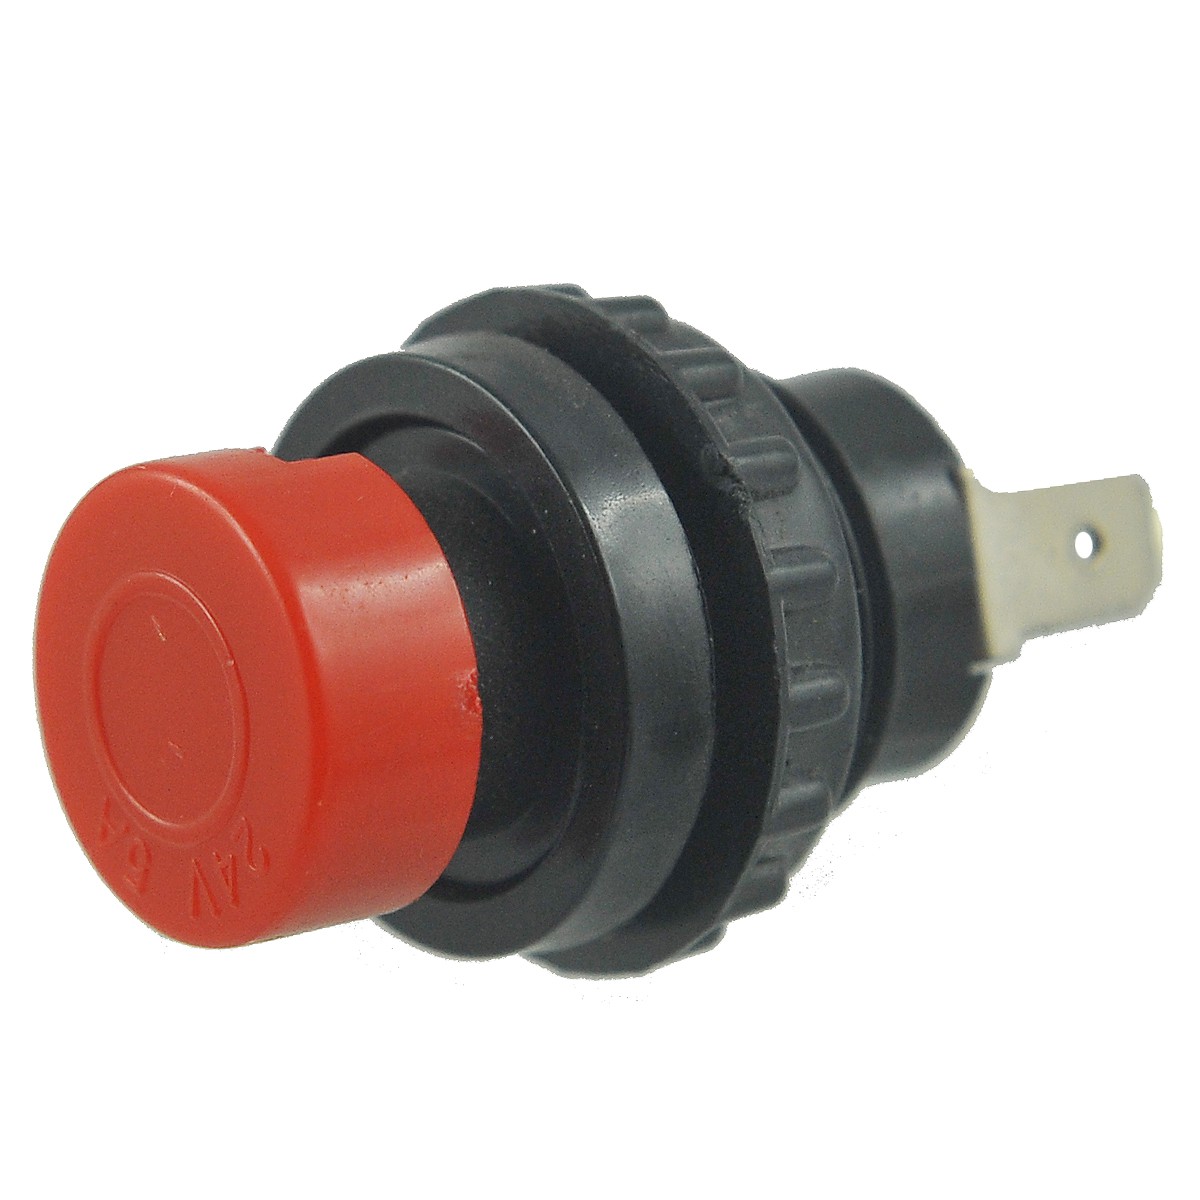 Horn button / 24V/5A / Ursus C330/C360/C385 / 50457860